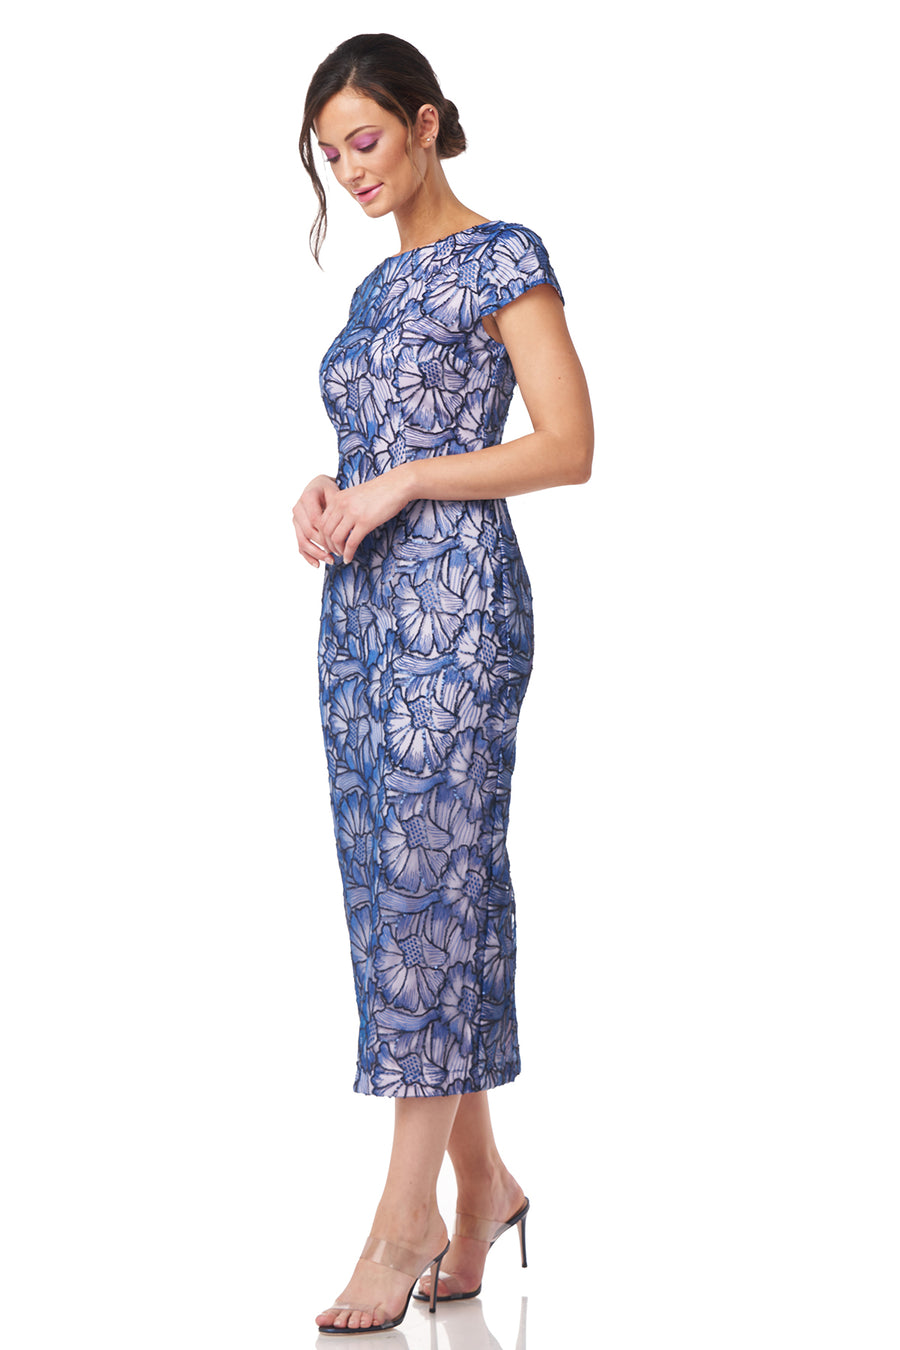 Lena Cap Sleeve Tea Length Dress